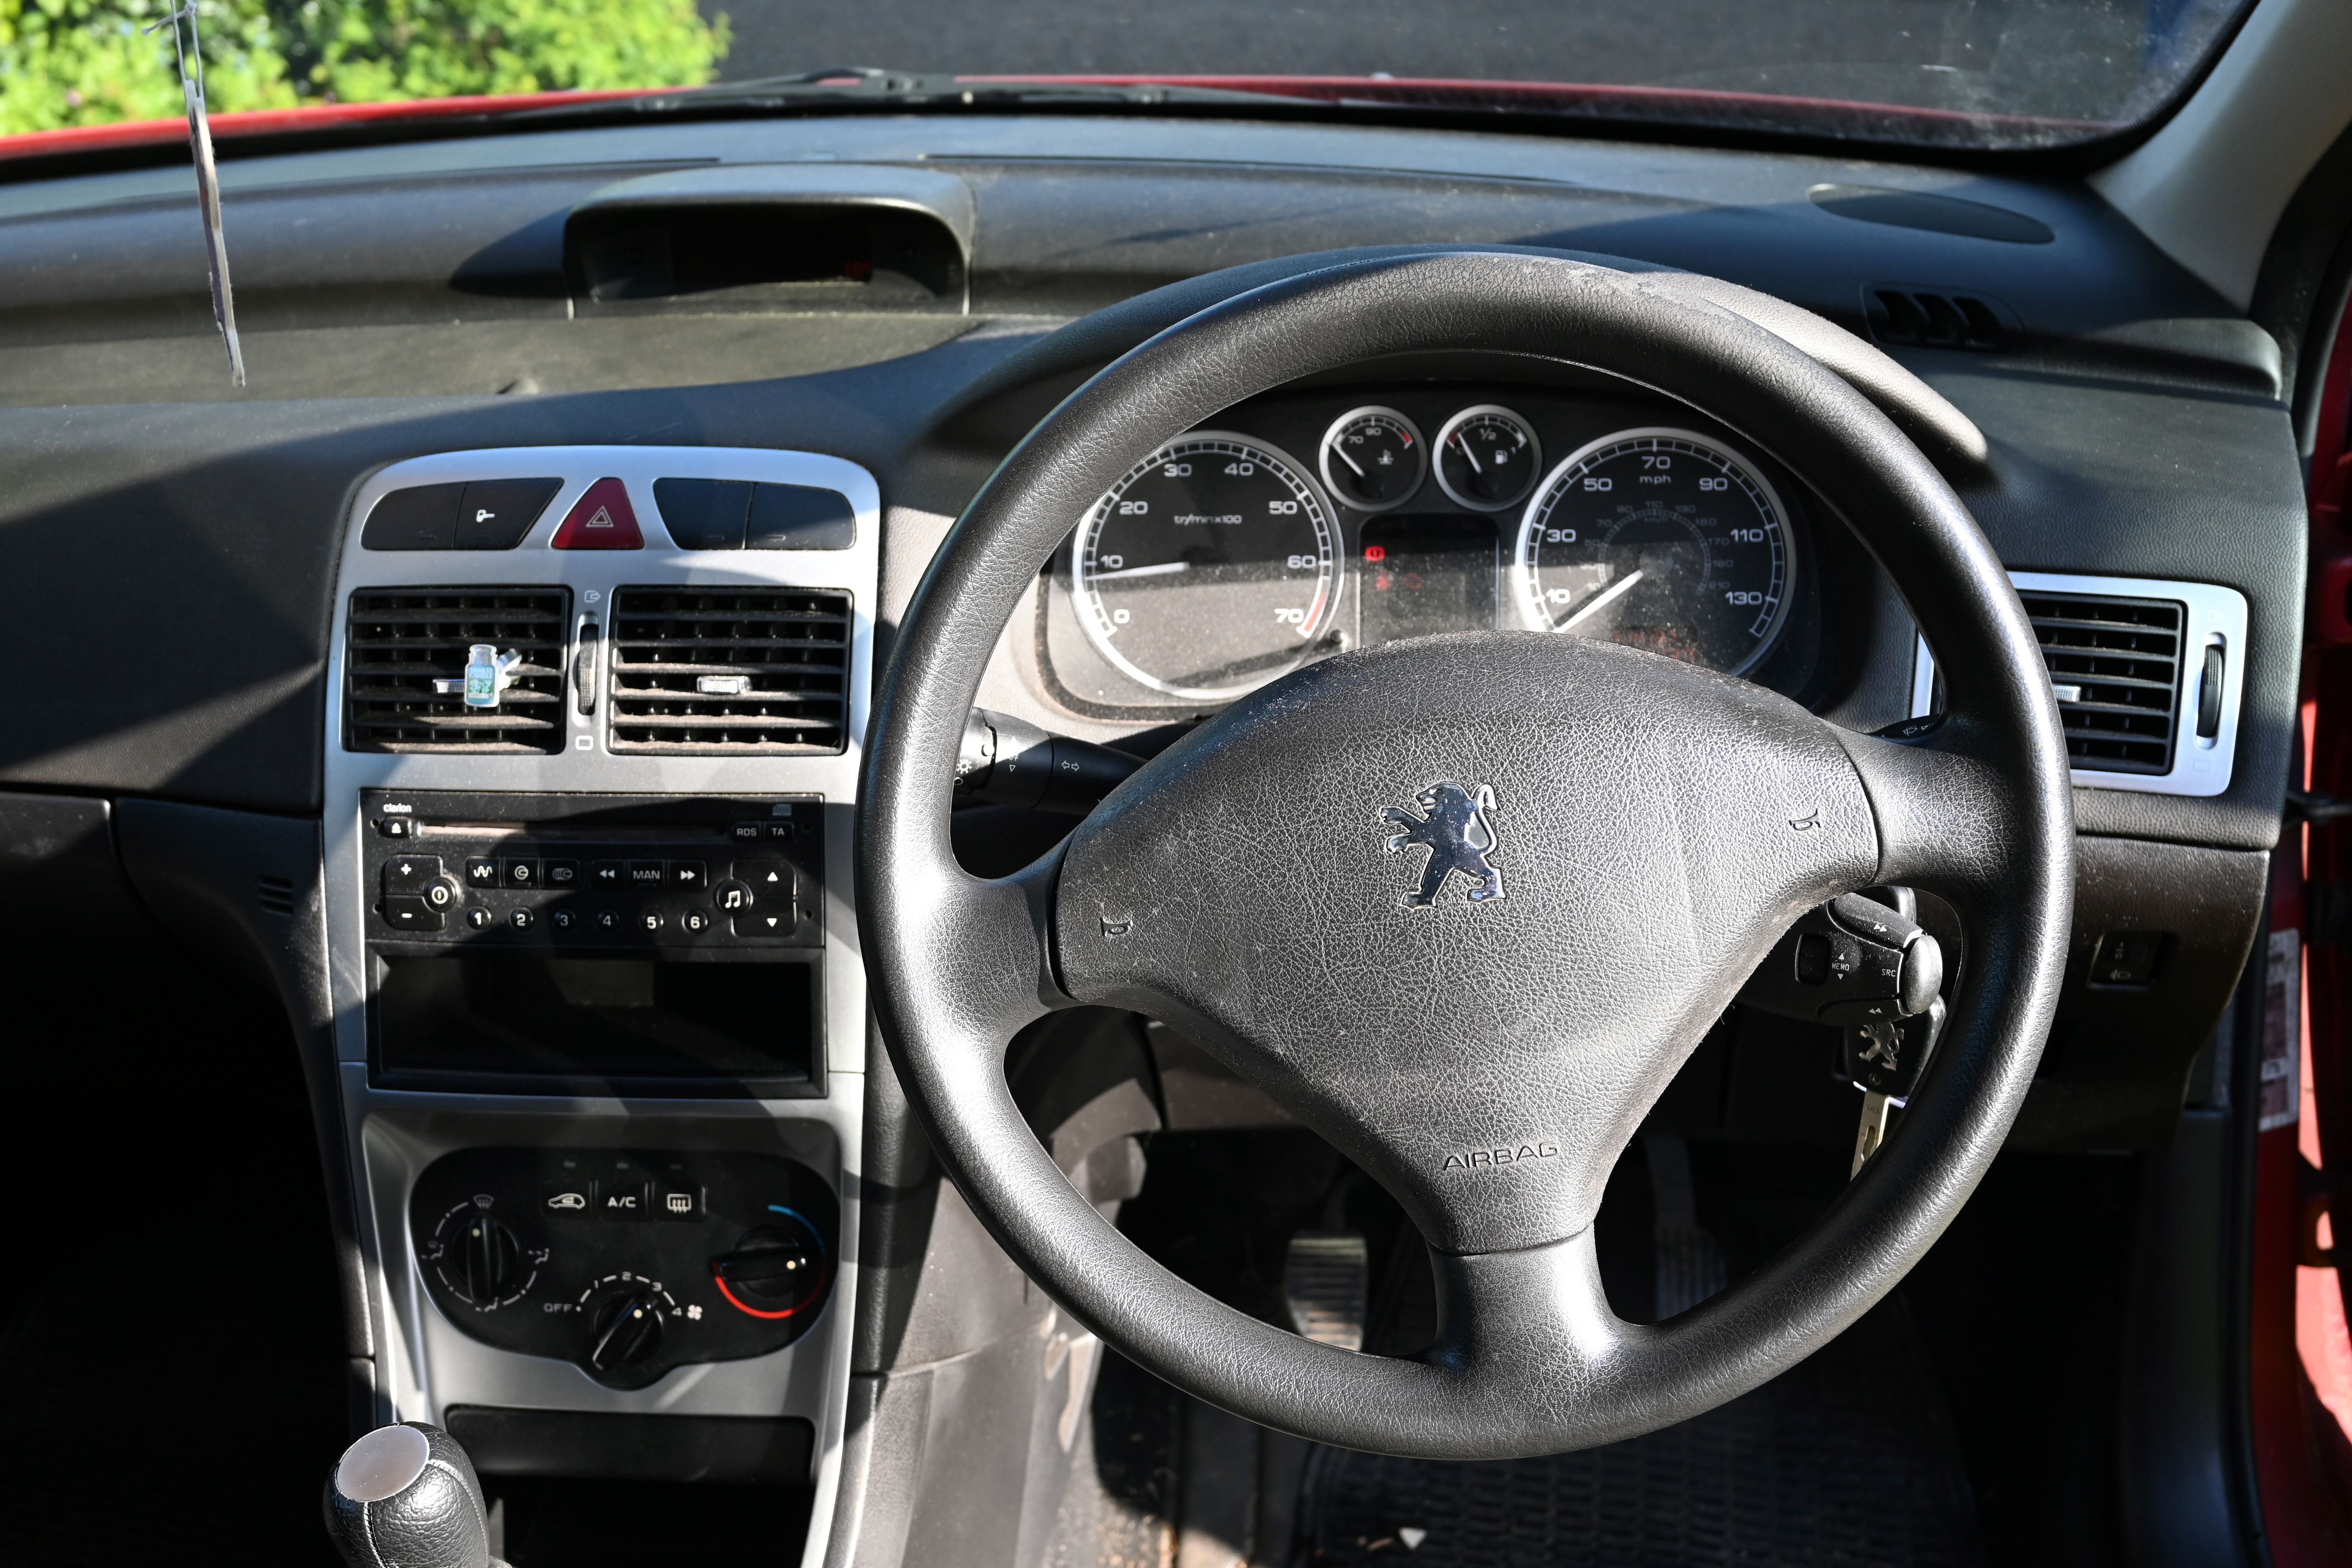 2004 Peugeot 307 1.6 16v S Hatchback 5dr Petrol Manual (a/c) (169 g/km, 110 bhp), 100137 miles - Image 11 of 18